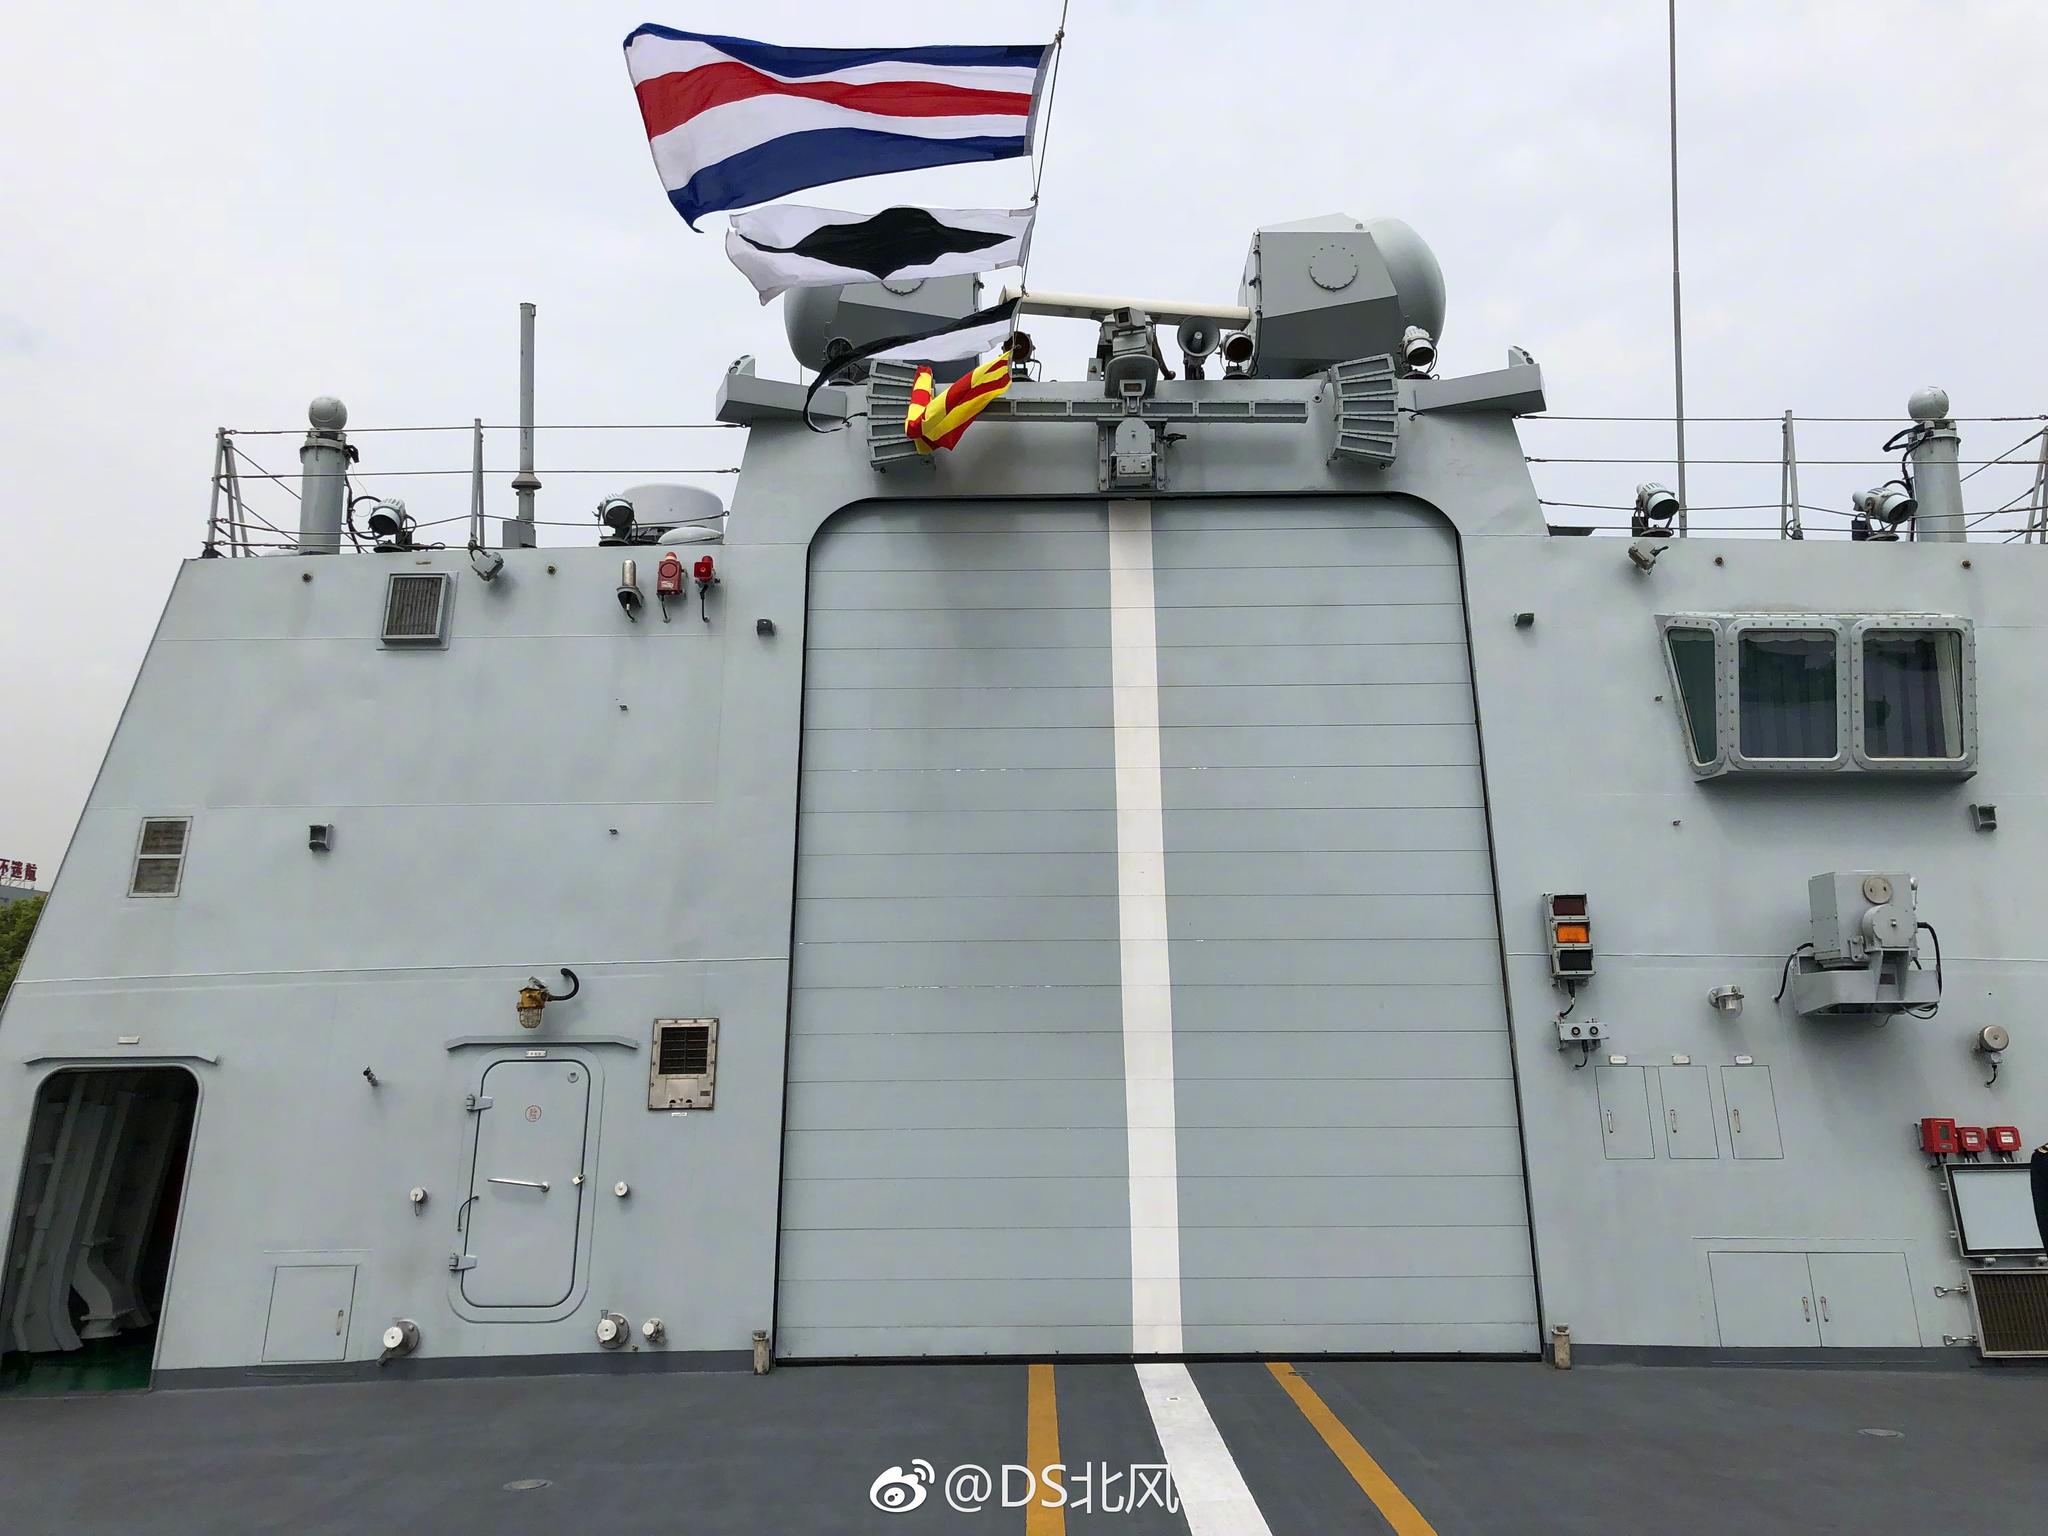 扬州号导弹护卫舰舷号578为054a型导弹护卫舰